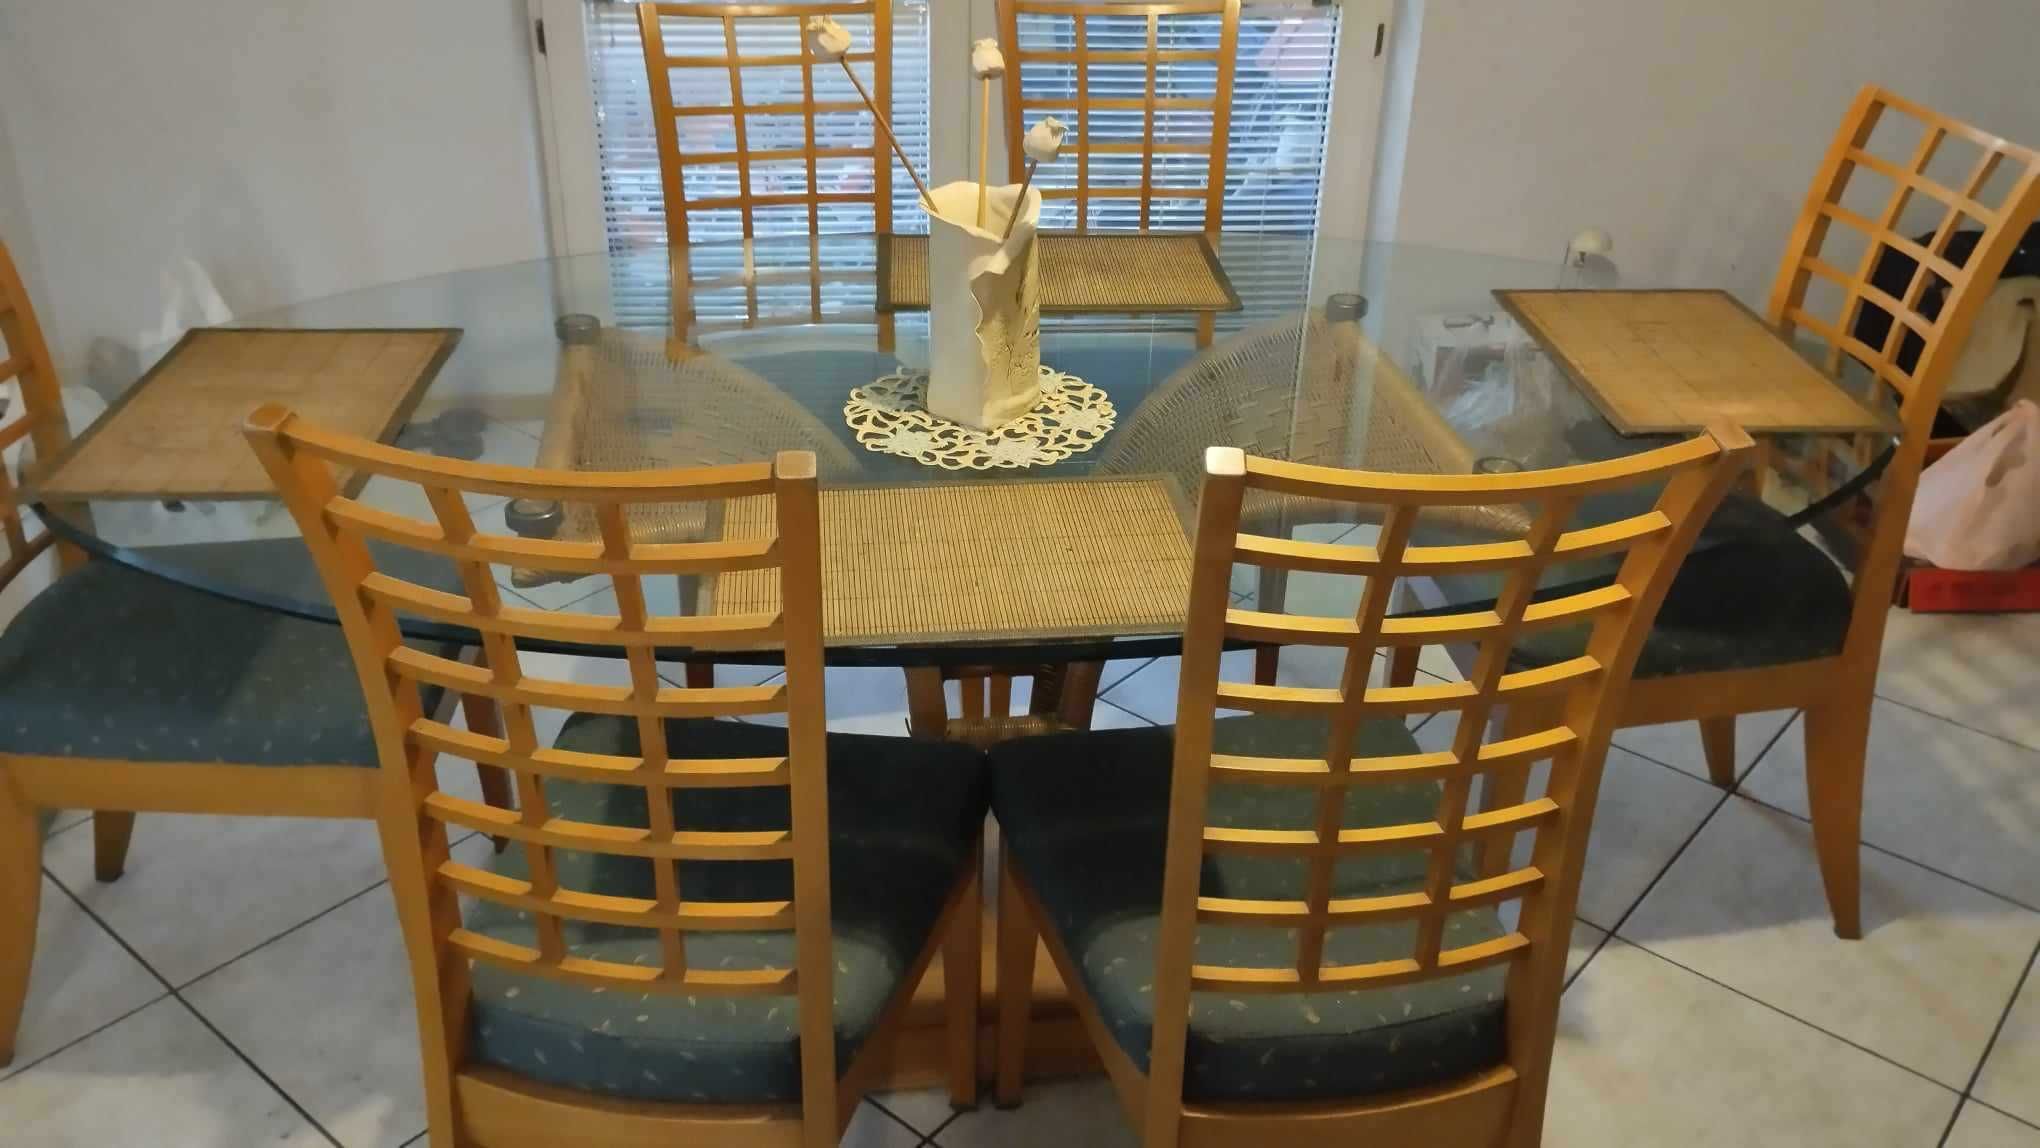 Stół szklany z rattanową podstawą  w komplecie z 8 krzesłami.